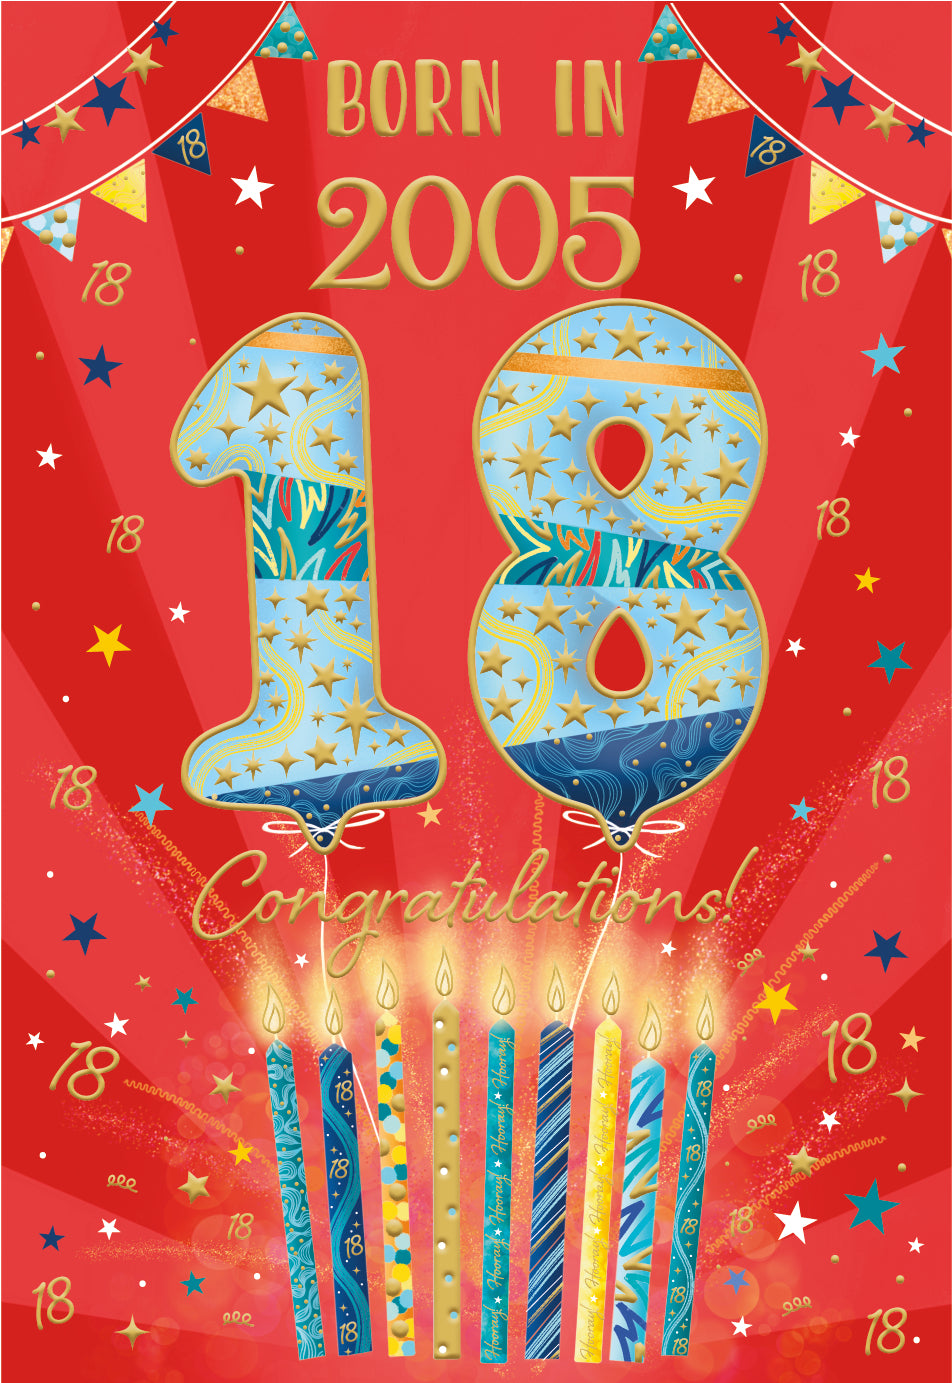 18th birthday card - born in 2005